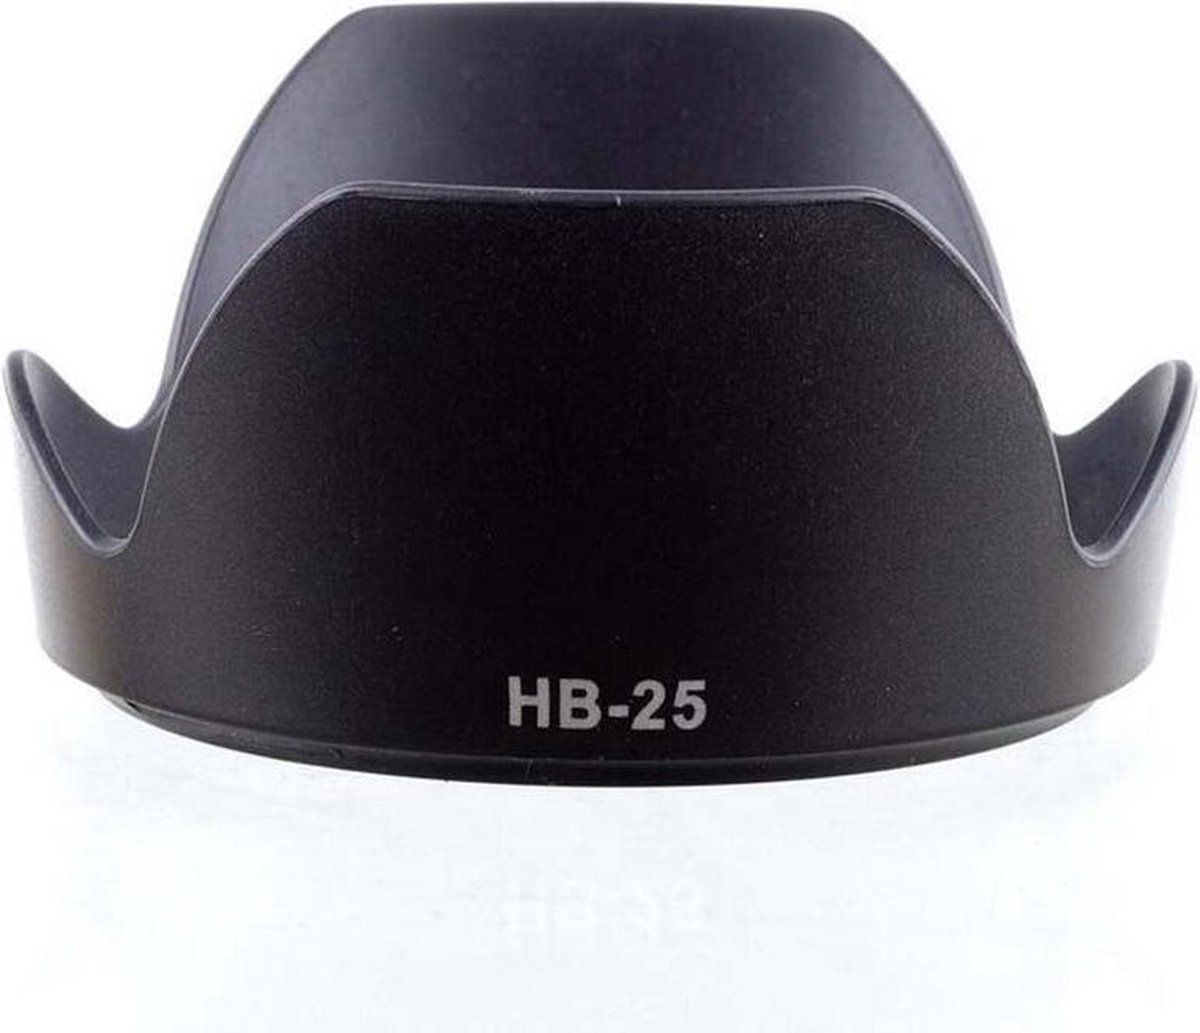 Zonnekap HB-25 voor Nikon 24-85 en 24-120mm met 72mm filtermaat